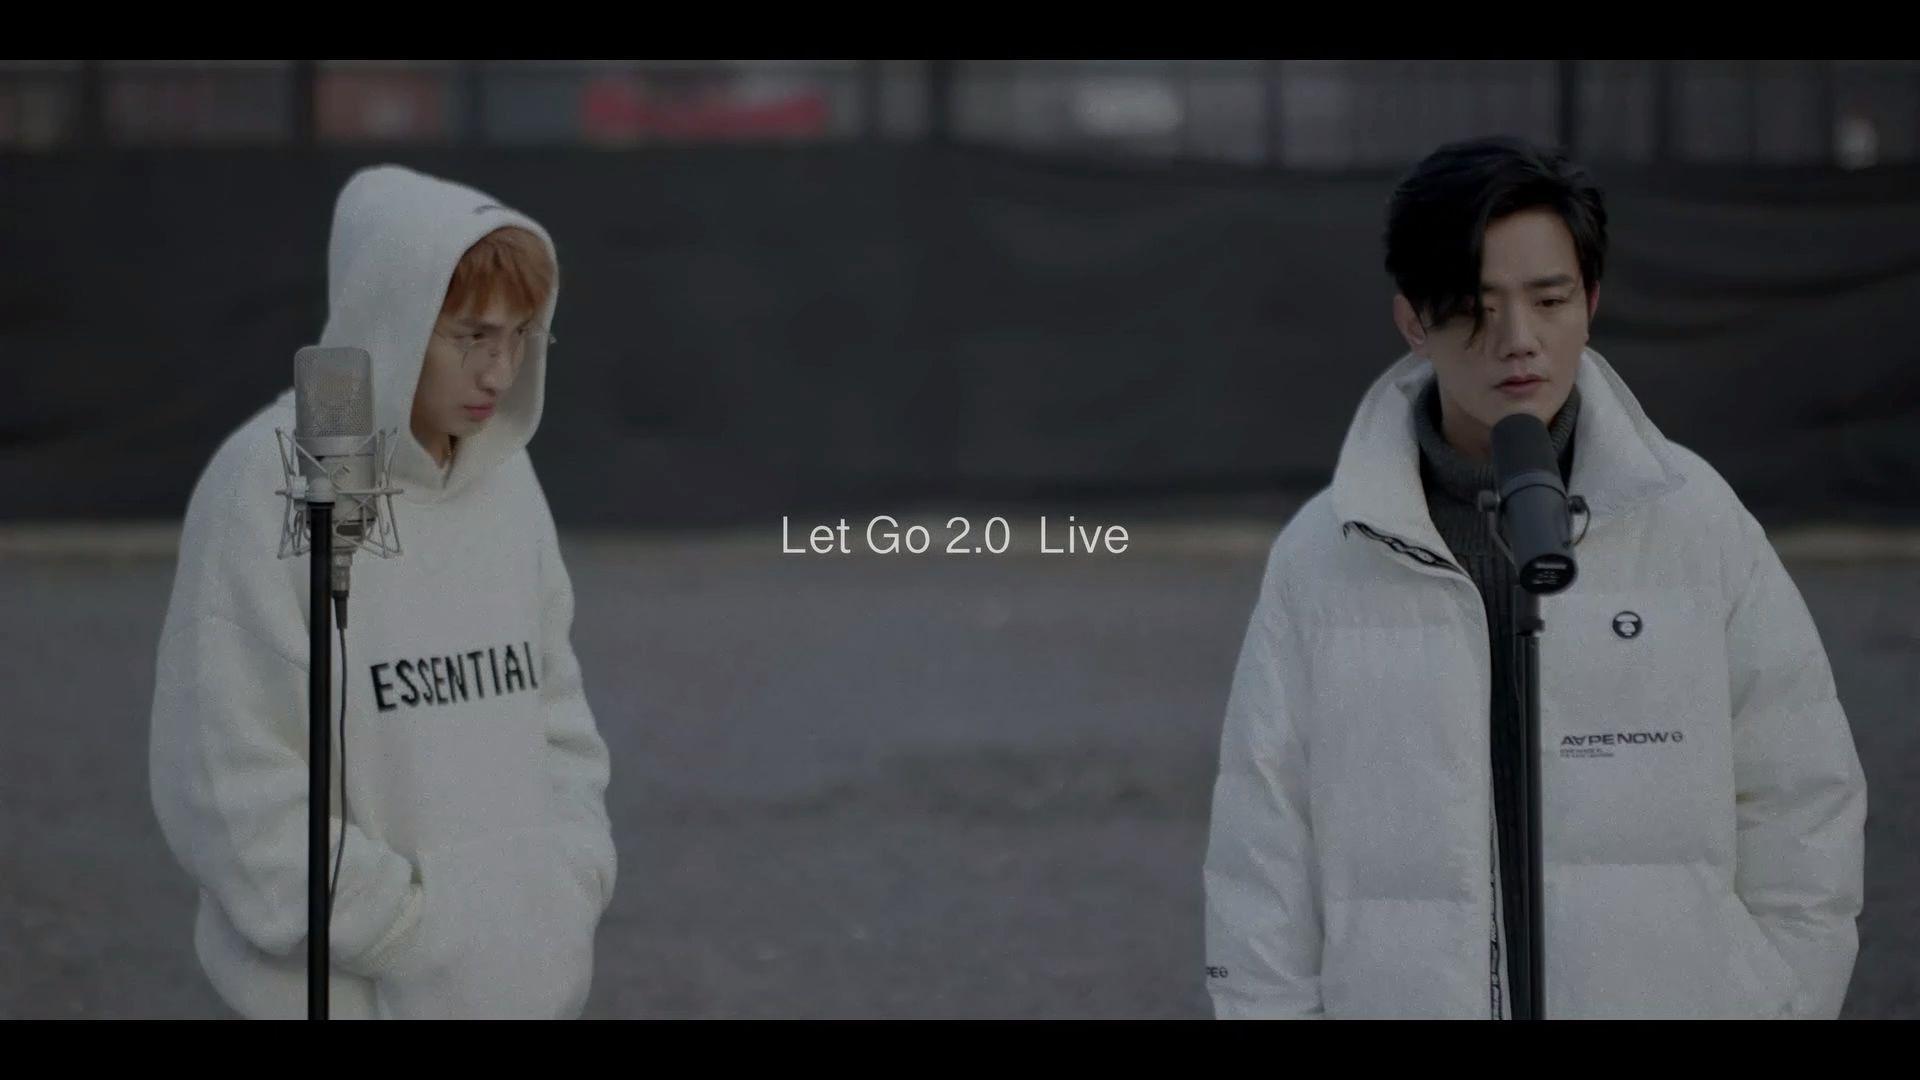 队长 - Let Go 2.0 Live